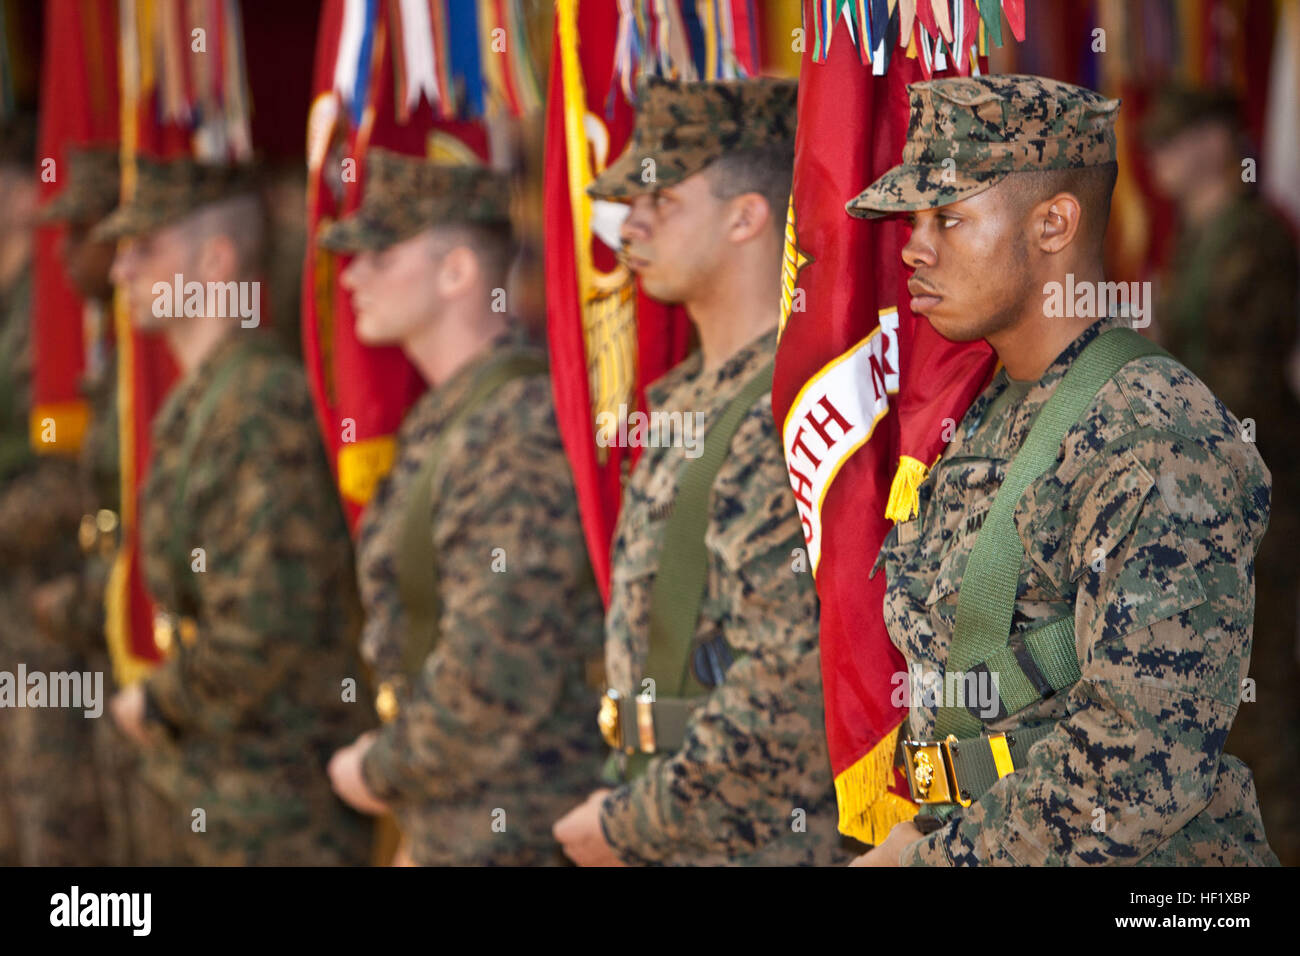 Der 2. Marine-Division (2. MarDiv) Color Guard-Stand auf der Parade Ruhe während der 2. MarDiv Schlacht Farben Umwidmung und Siegerehrung für den 2. MarDiv 73. Jubiläumsfeier am Camp Lejeune, North Carolina, 31. Januar 2014.  Die Zeremonie fand statt, um die Geschichte zu bewahren, zu Ehren und Gedenken der Marines und Matrosen der Division. (Foto: U.S. Marine Corps Lance Cpl. David McKenzie, 2. MARDIV Bekämpfung der Kamera/freigegeben) SMDA 140131-M-HZ136-091 Stockfoto